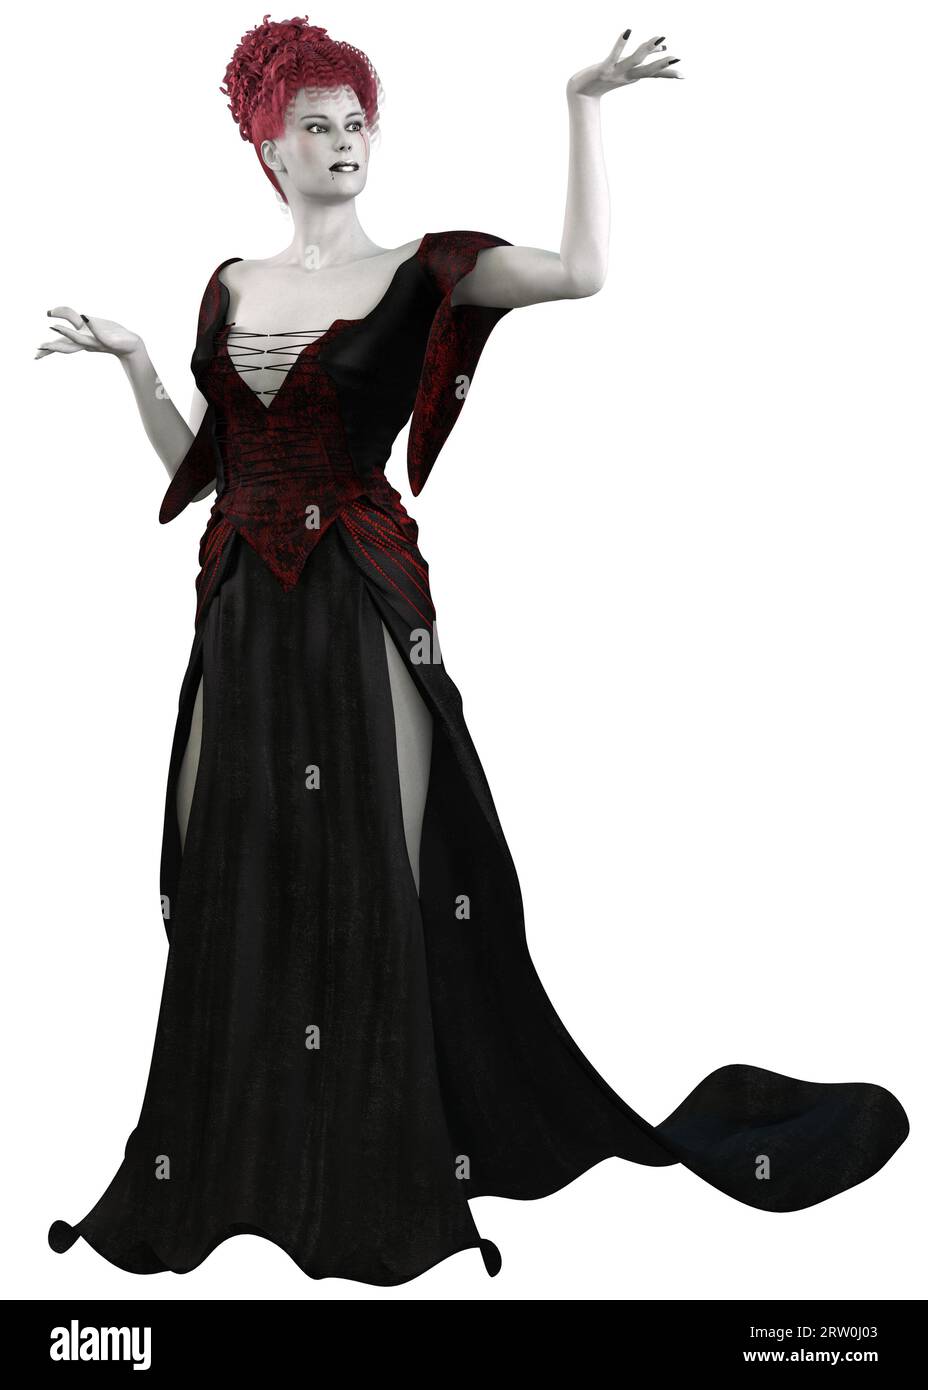 Fantasy-Magie, Hexenfrau mit blasser Haut trägt schwarz-rotes Outfit, 3D-Illustration. Stockfoto